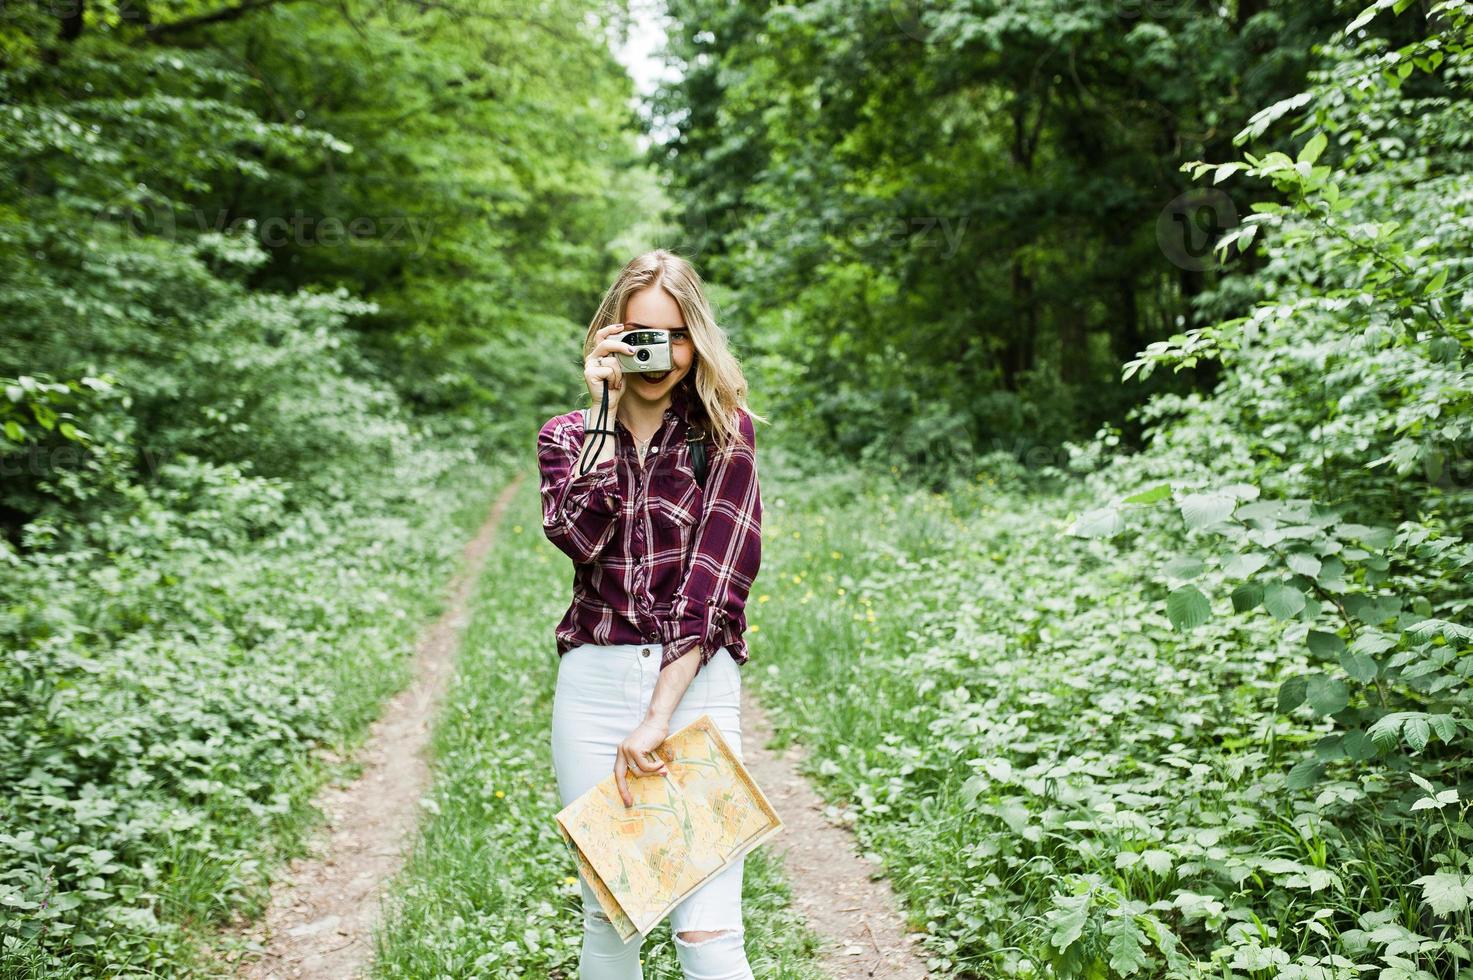 ritratto di una splendida ragazza in camicia scozzese che scatta foto con la fotocamera nella foresta.